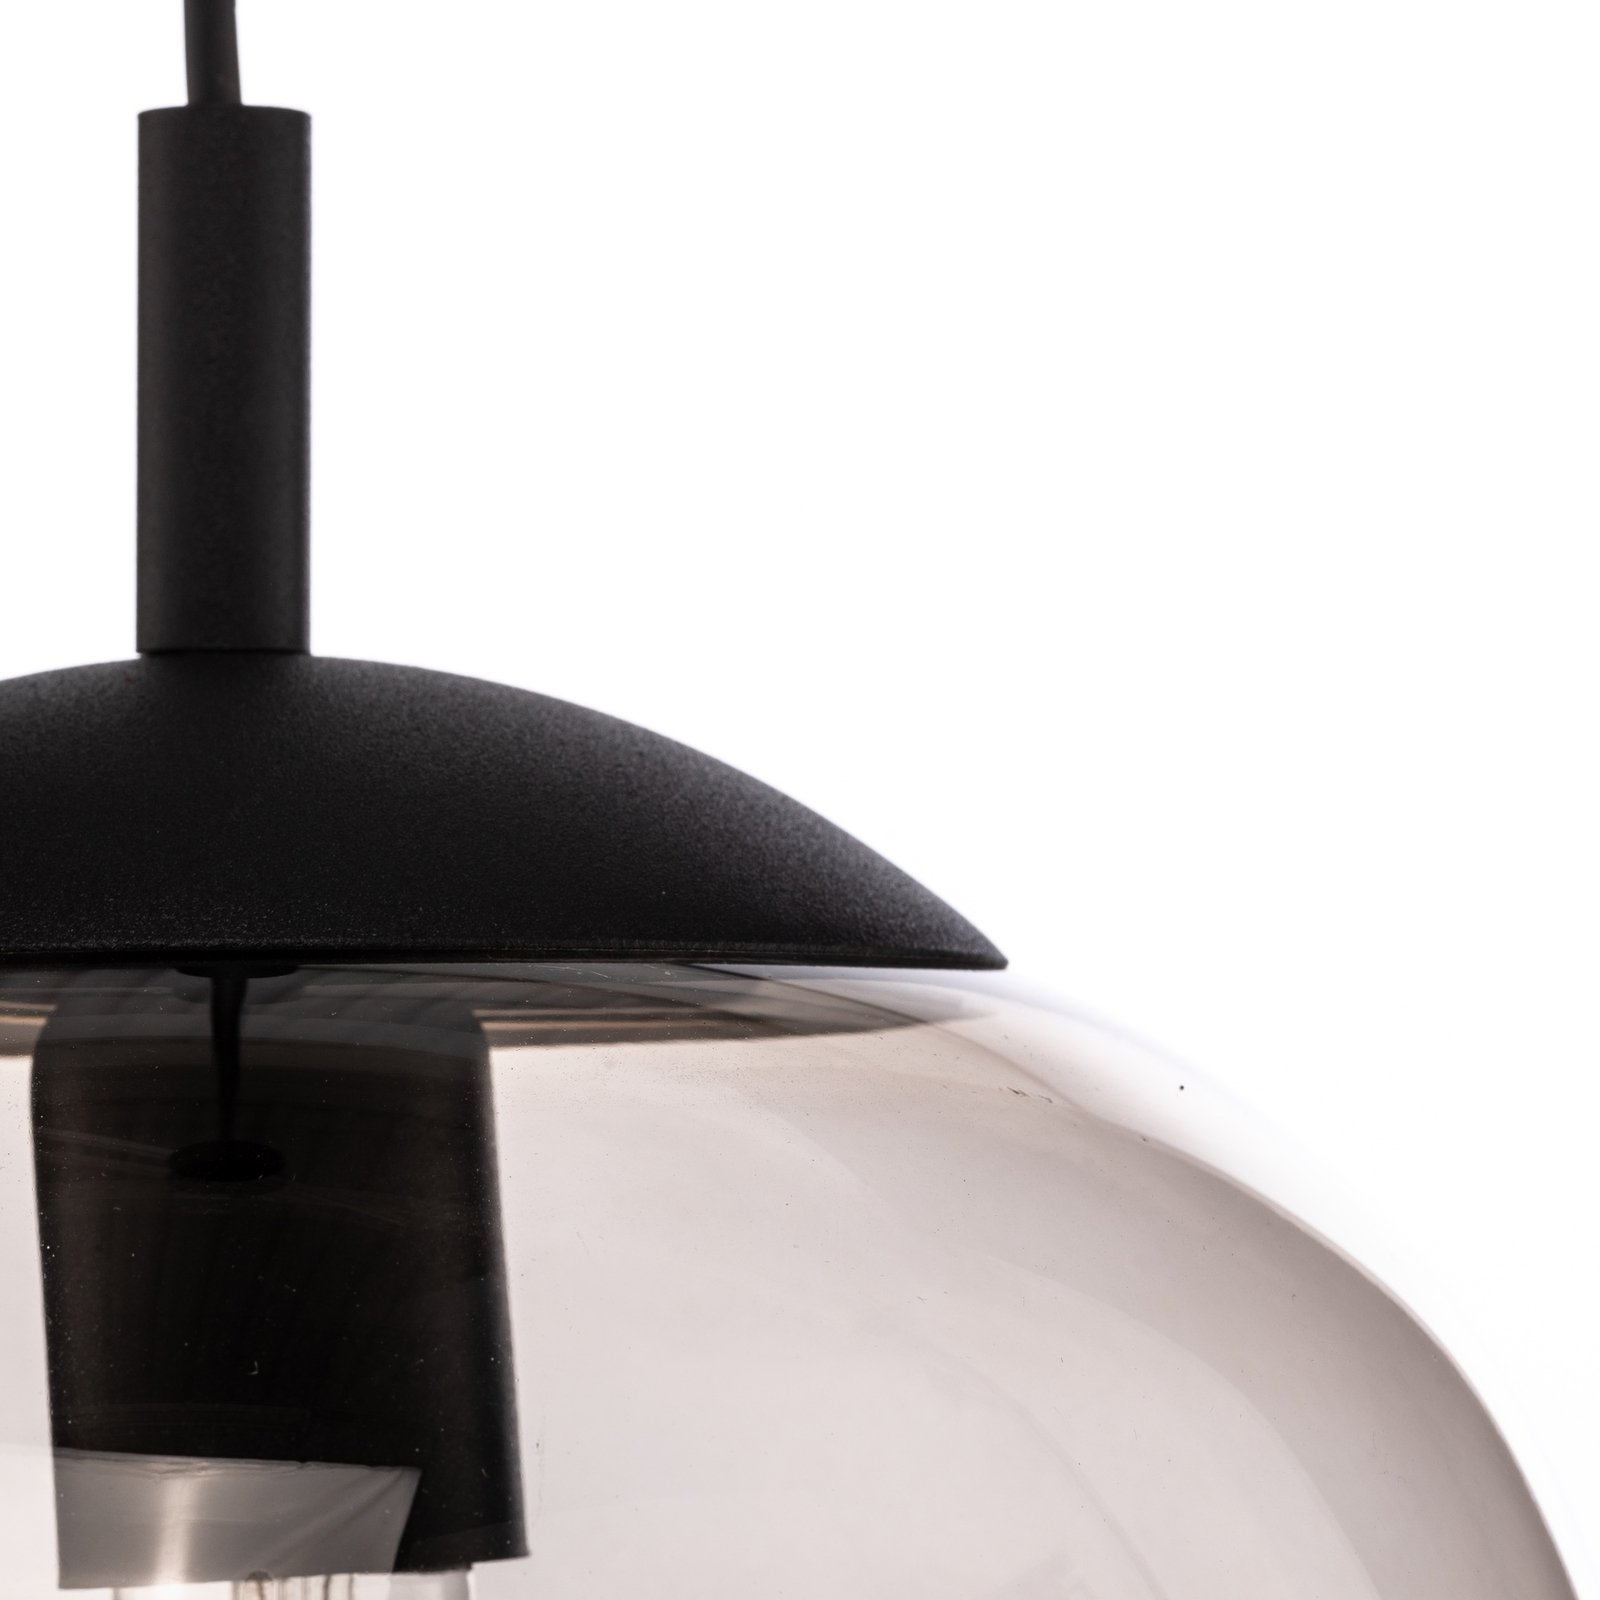 Viseća svjetiljka Vibe, smeđe-prozirno staklo, Ø 25 cm